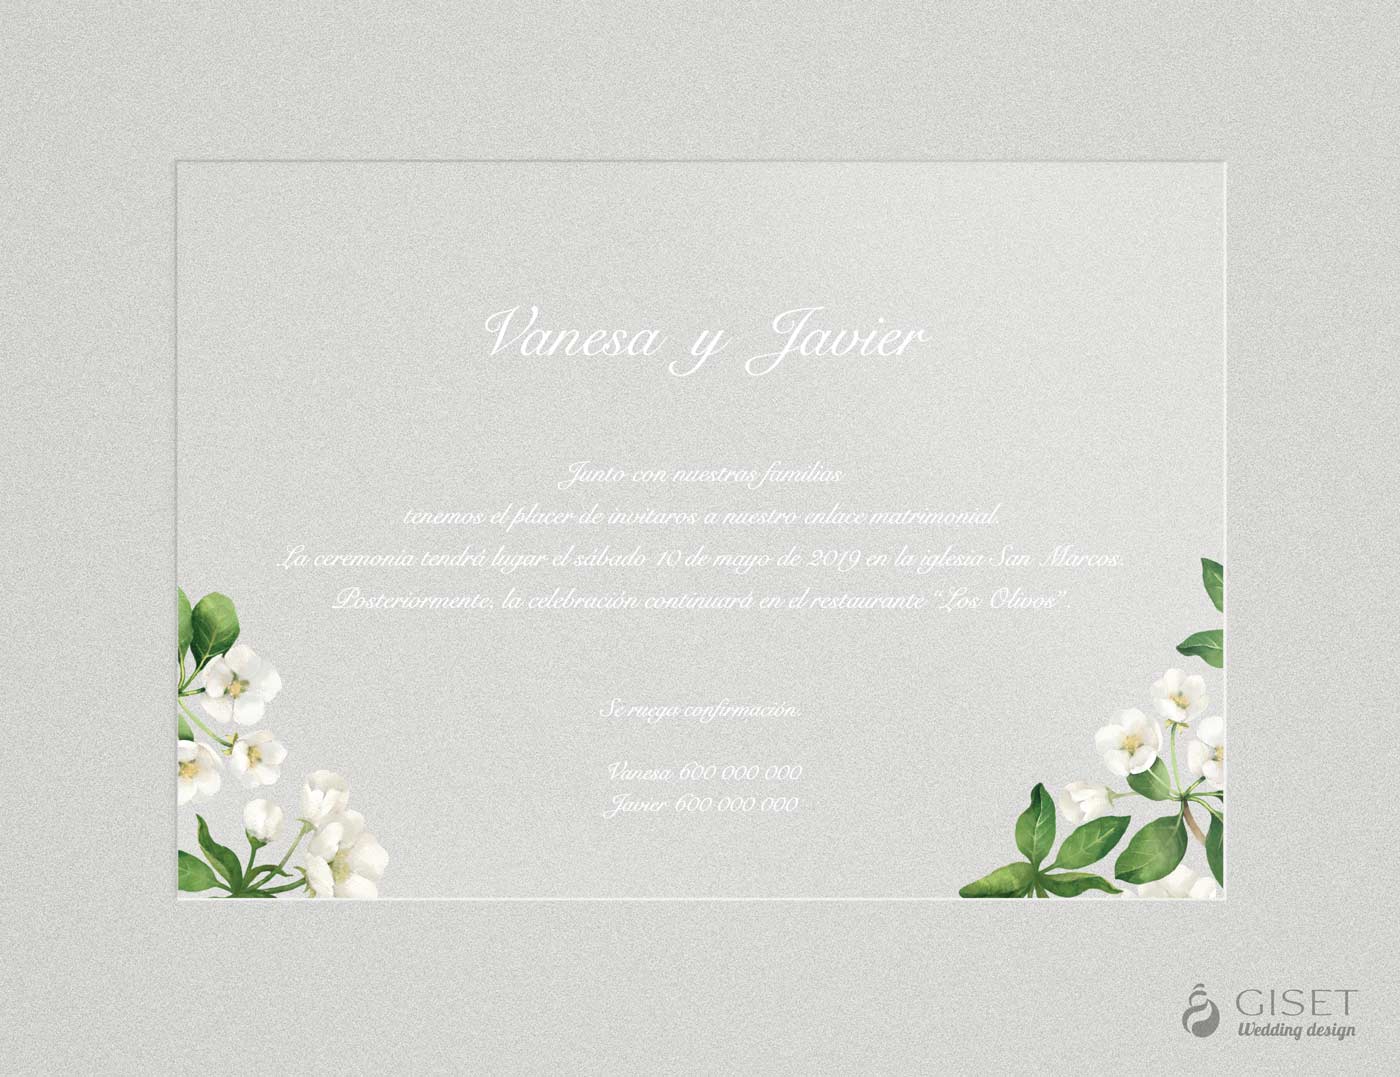 Invitaciones de boda transparentes con flores blancas en acuarela - Giset  Wedding